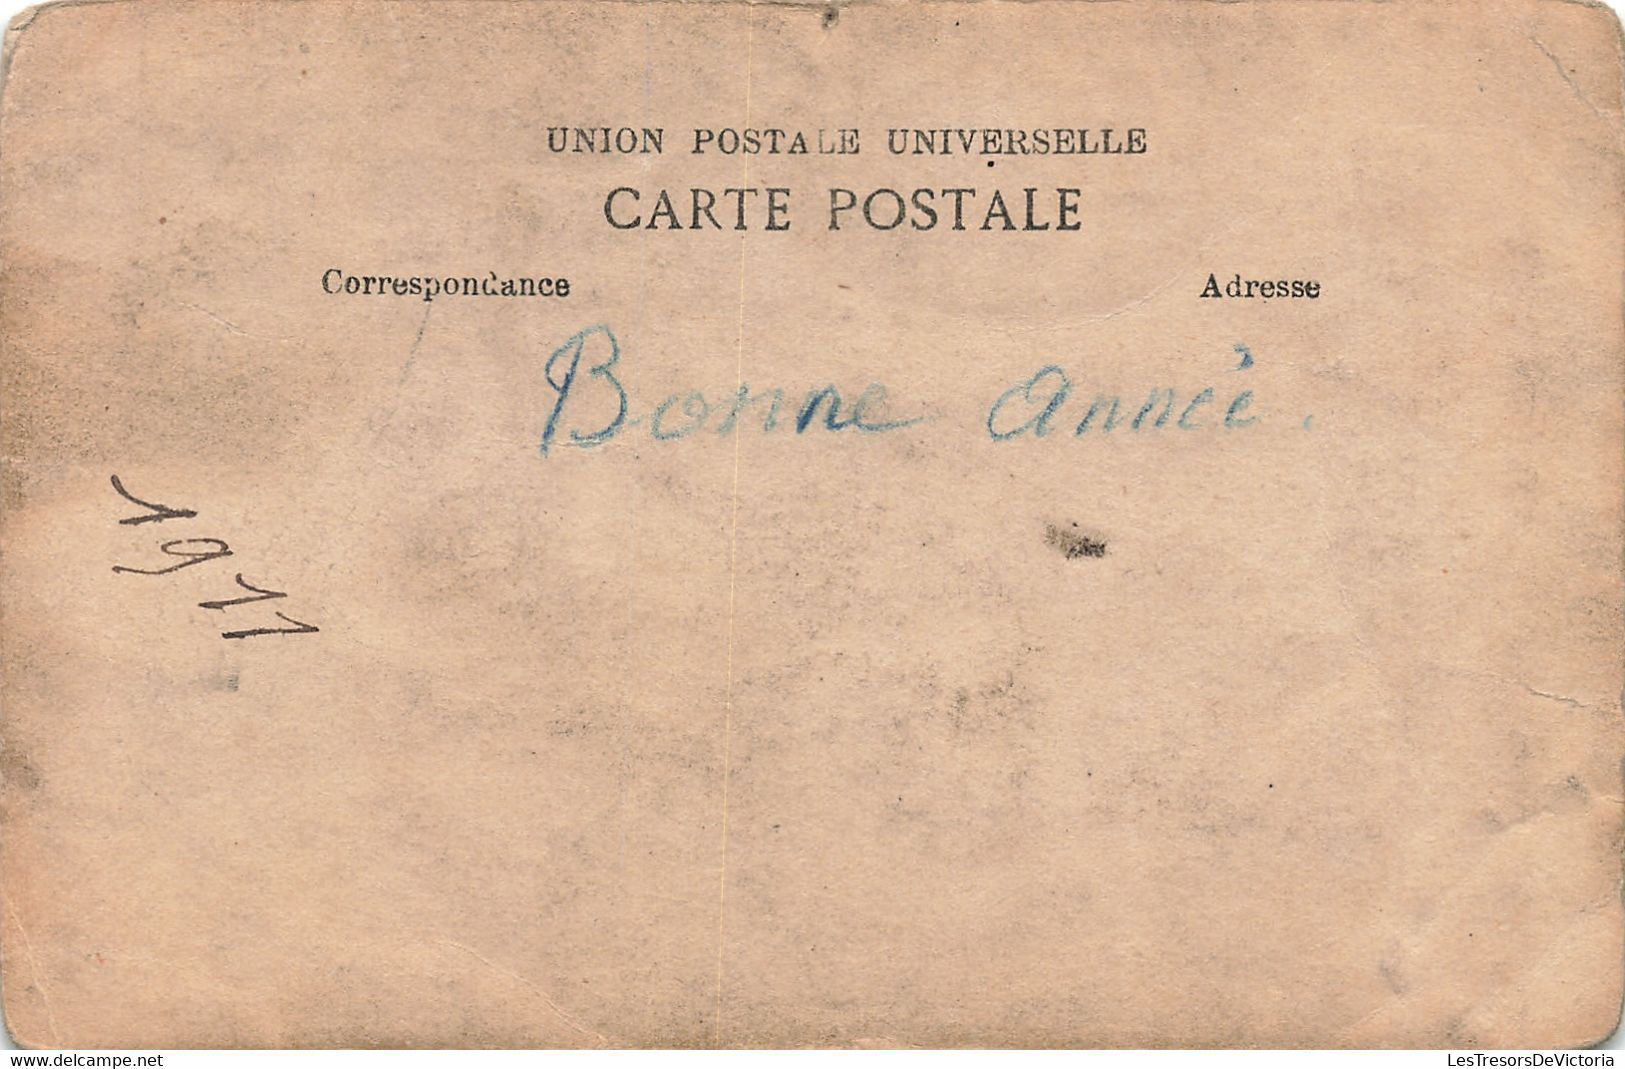 Café - Carte Photo - Colombophile - Animé - J. Quitis Dechamps - Daté 1911- Carte Postale Ancienne - Caffé